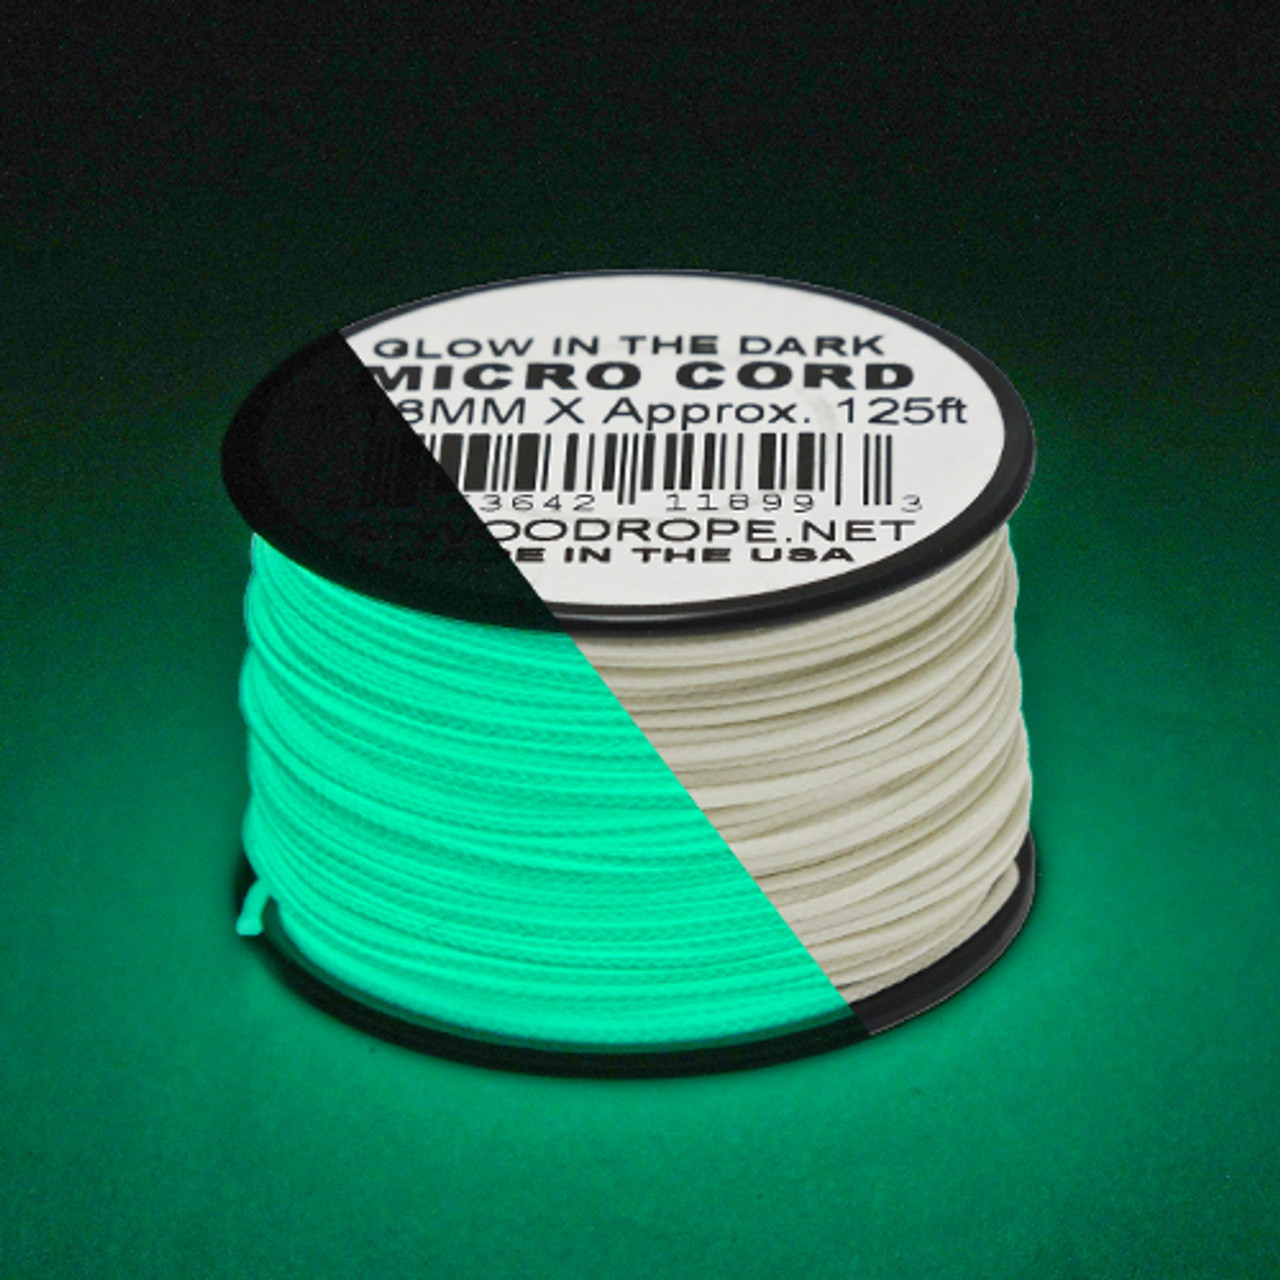 Glow in the Dark Micro Cord - 125' Spool